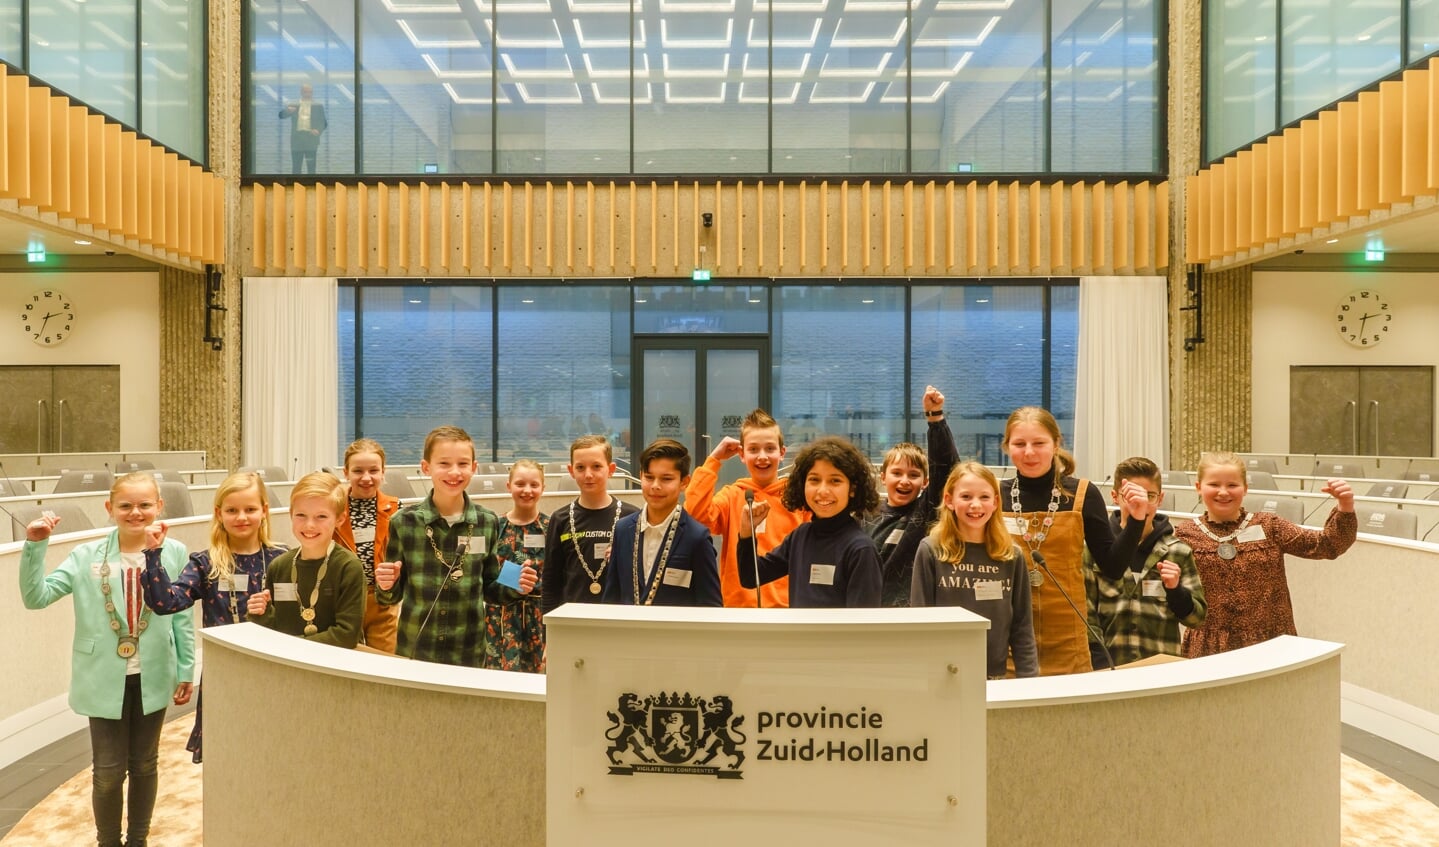 De kinderburgemeesters nemen de statenzaal van de provincie Zuid-Holland in. 